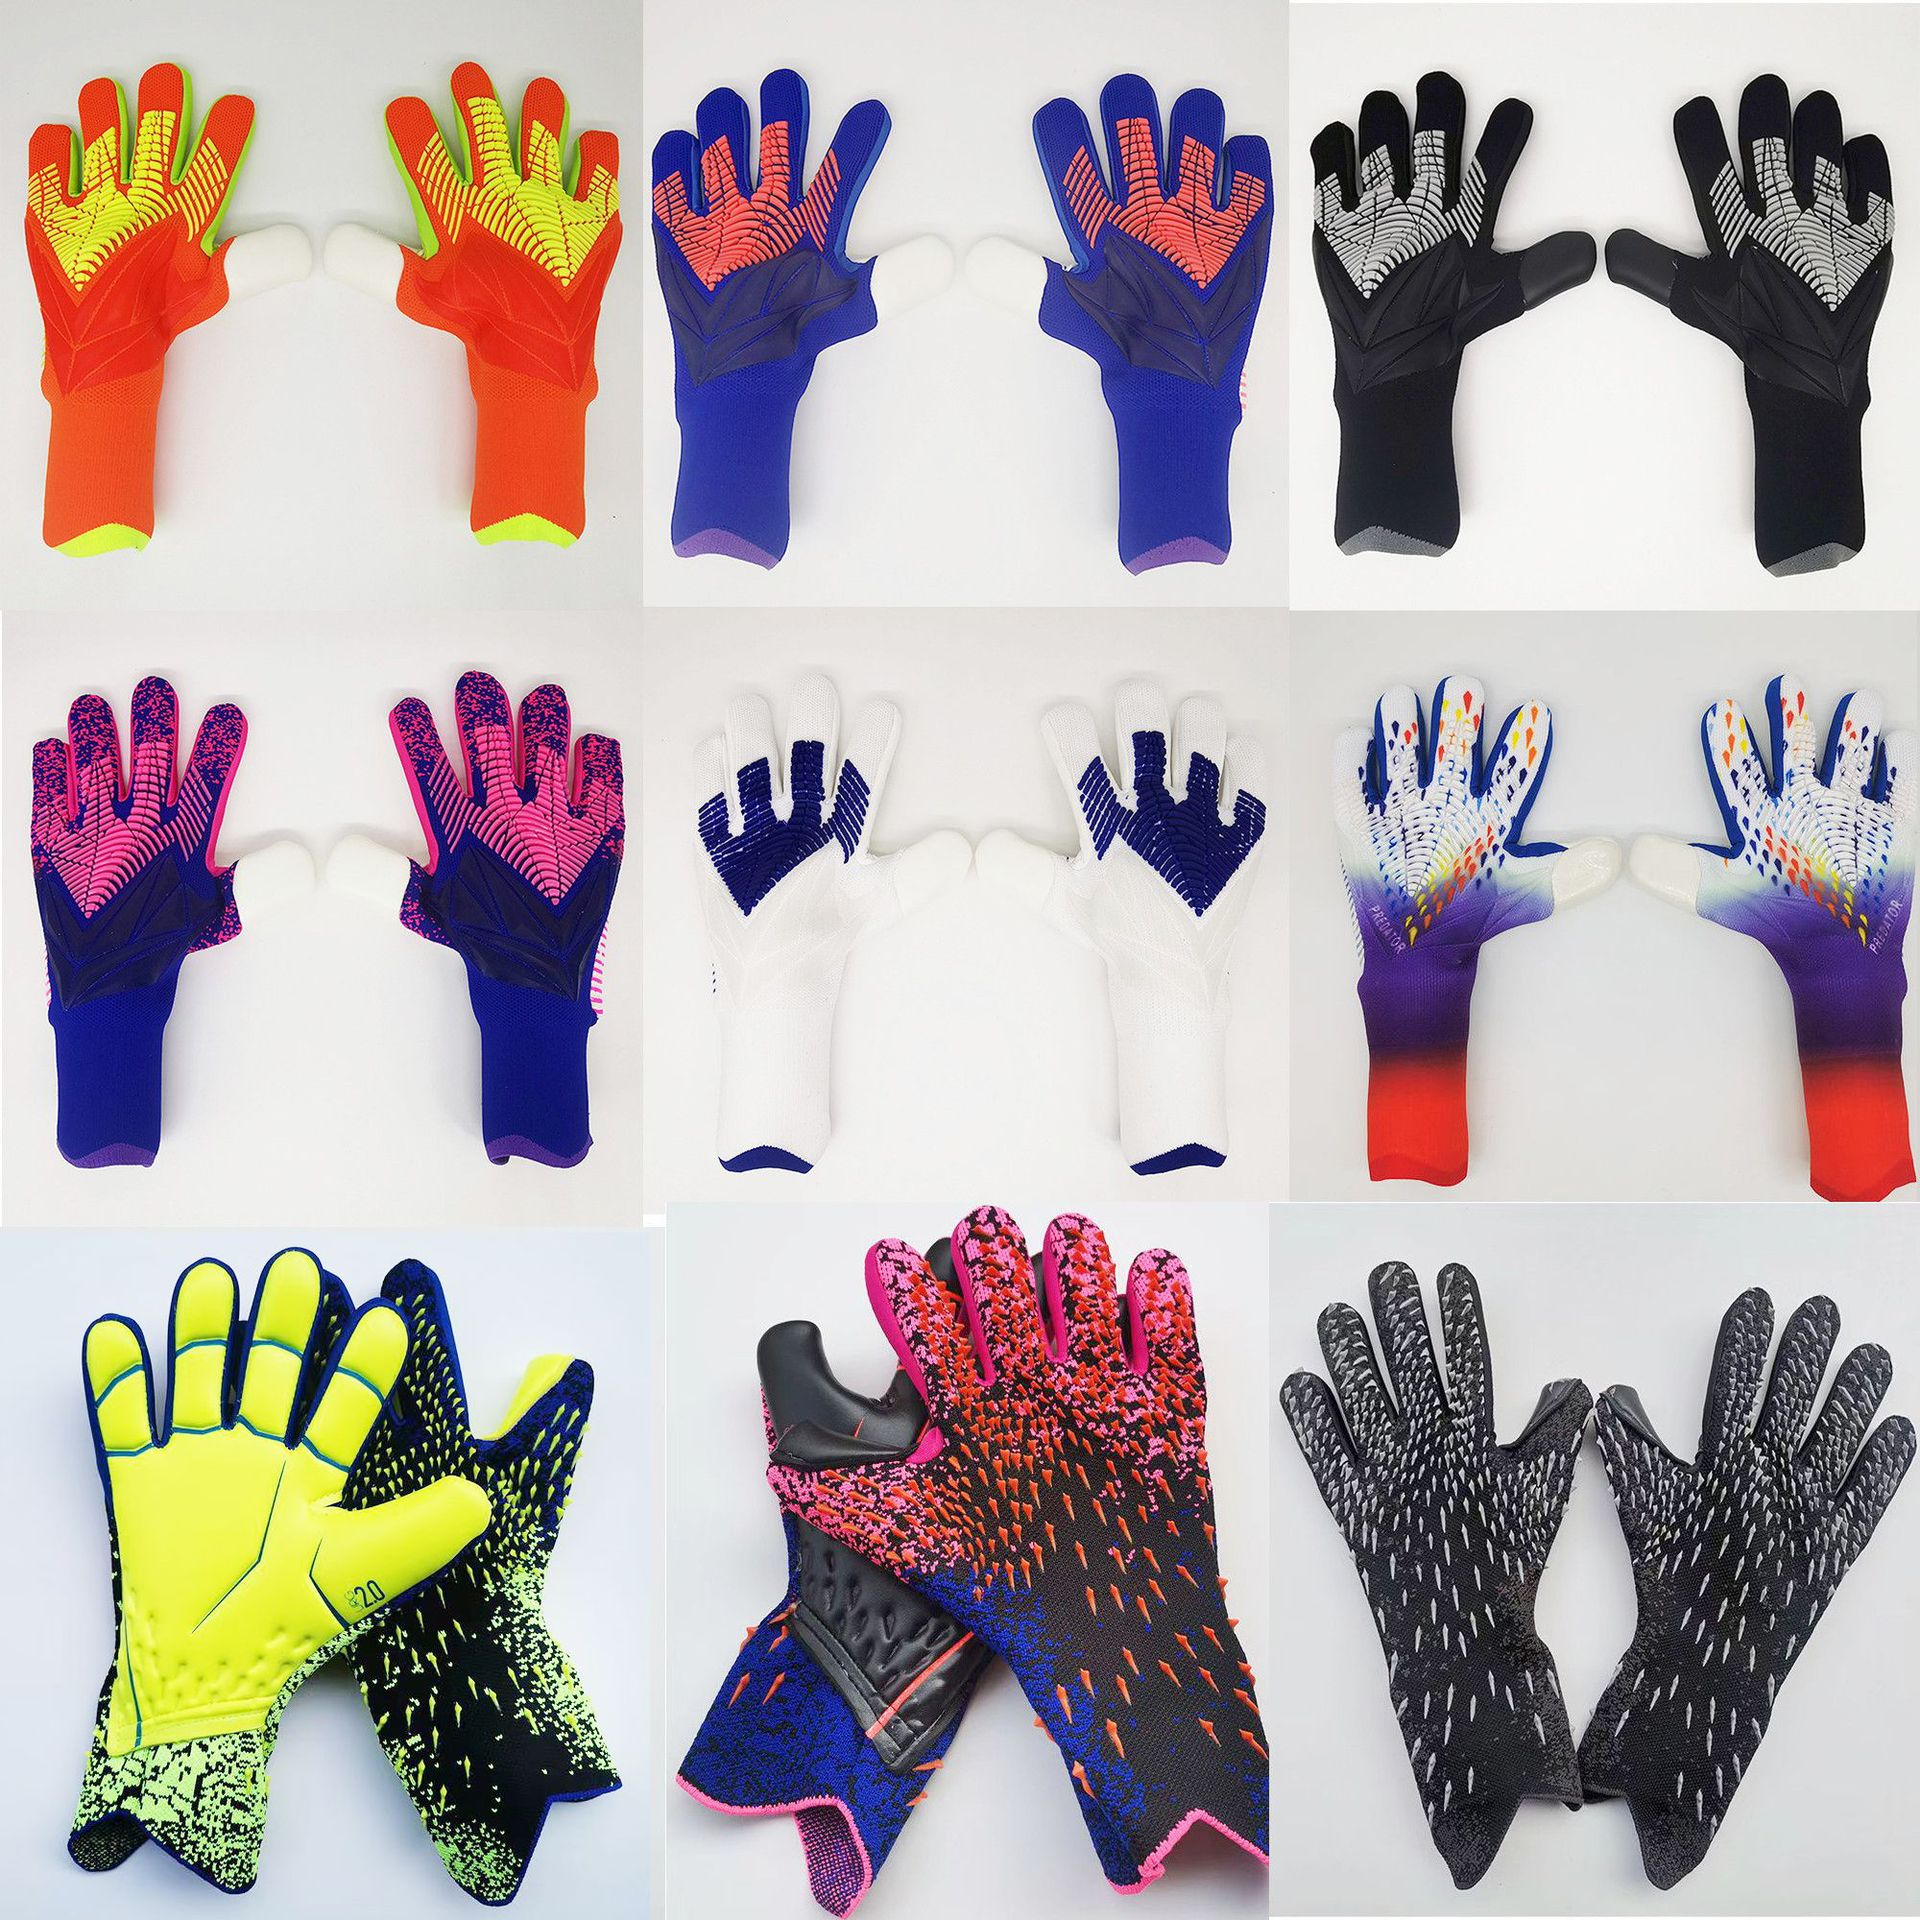 2023新しいゴールキーパーグローブスパイダーフィンガー保護捕食者キーパーグローブ男性キッズゴールキーパーフットボールGuantes de PorteroワールドカップSccor Gloves